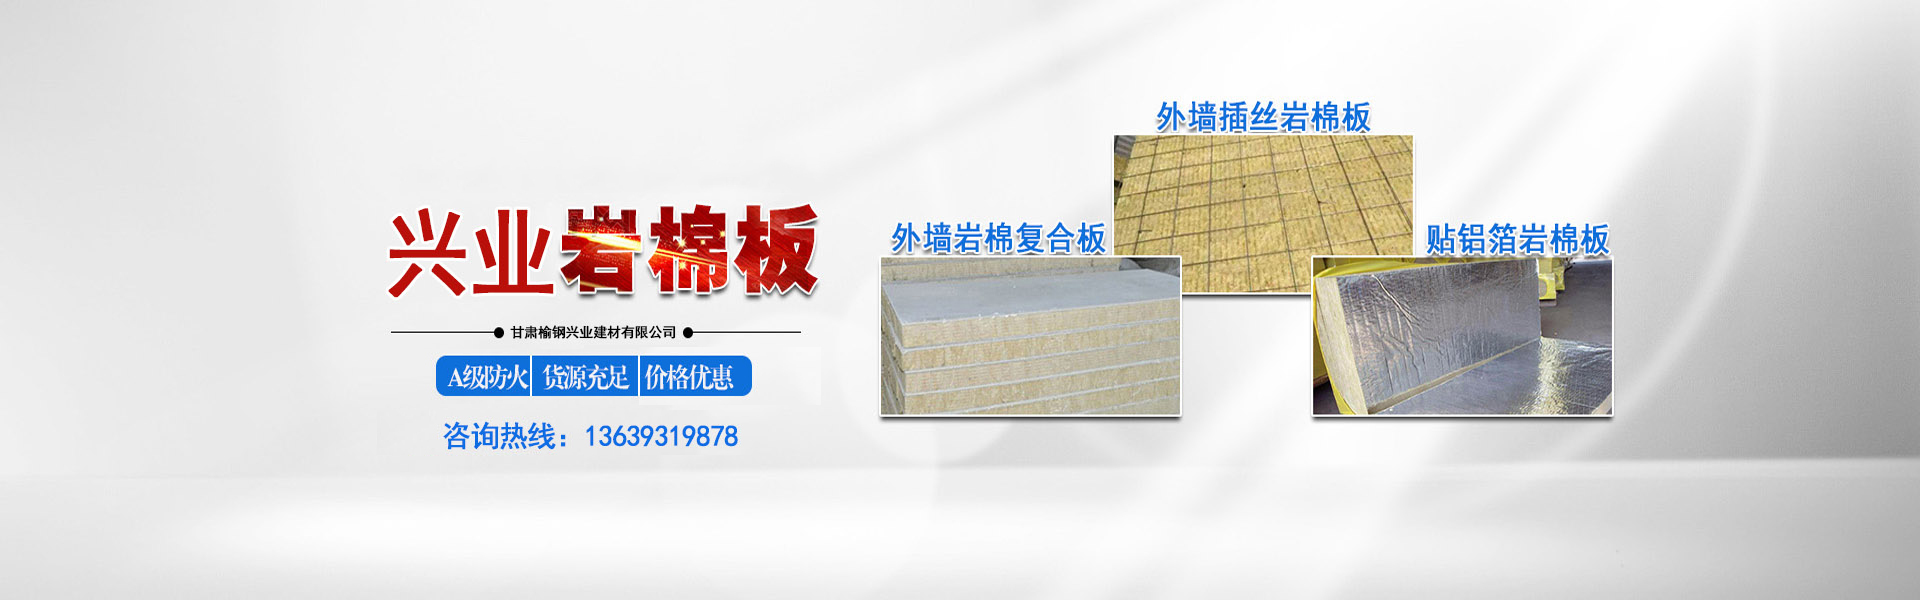 甘肃榆钢兴业建材有限公司专业生产兰州岩棉板。